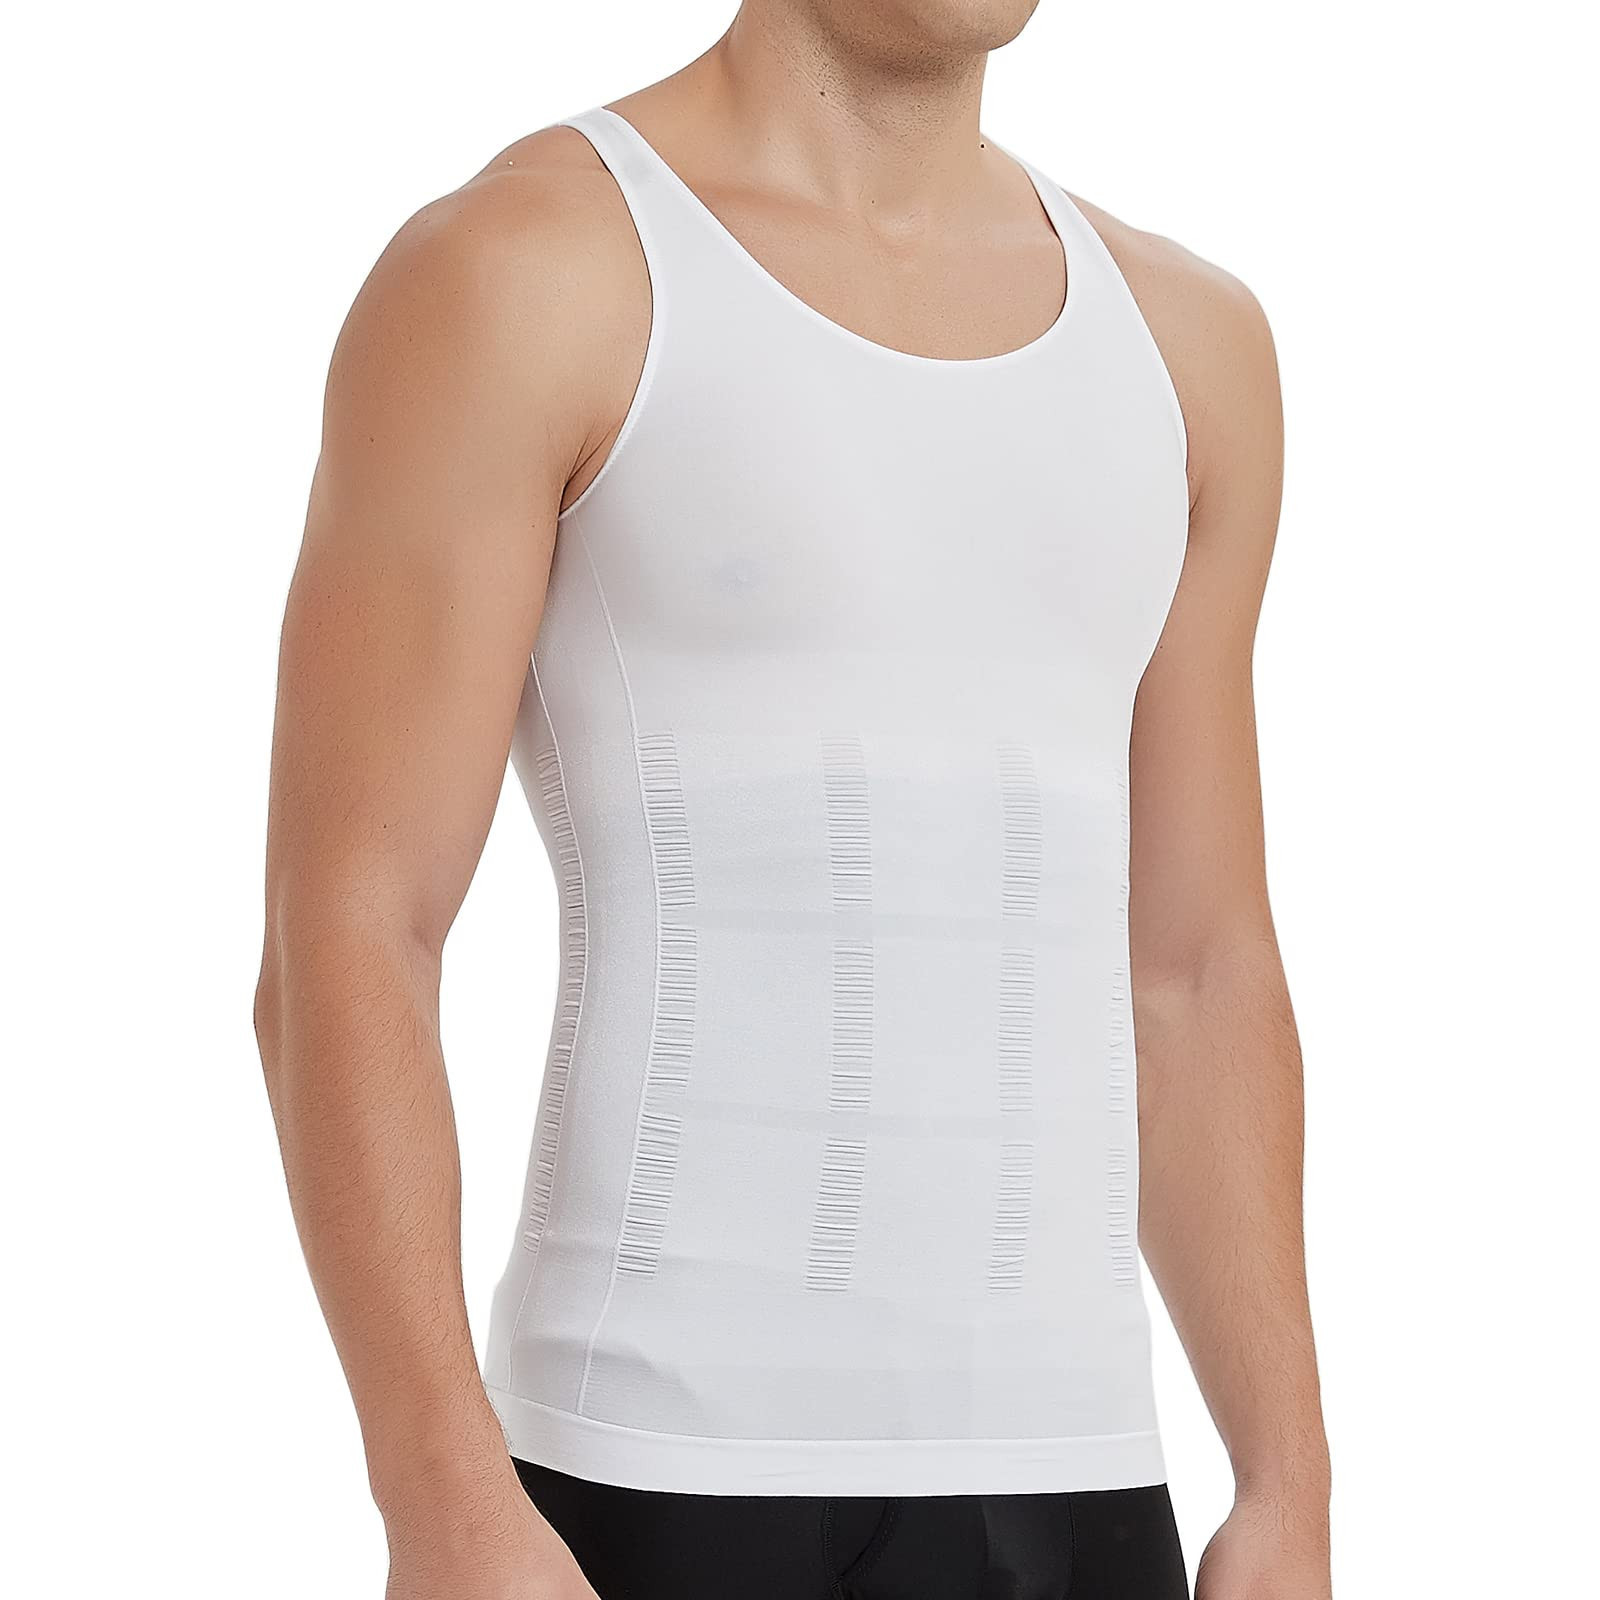 https://www.zebrs.com/uploads/zebrs/products/ff-menamp039s-slimming-body-shaper-vest-belly-underwear-shapewear-workout-tank-top---white-3xlsize-3xl-184435558865741_l.jpg